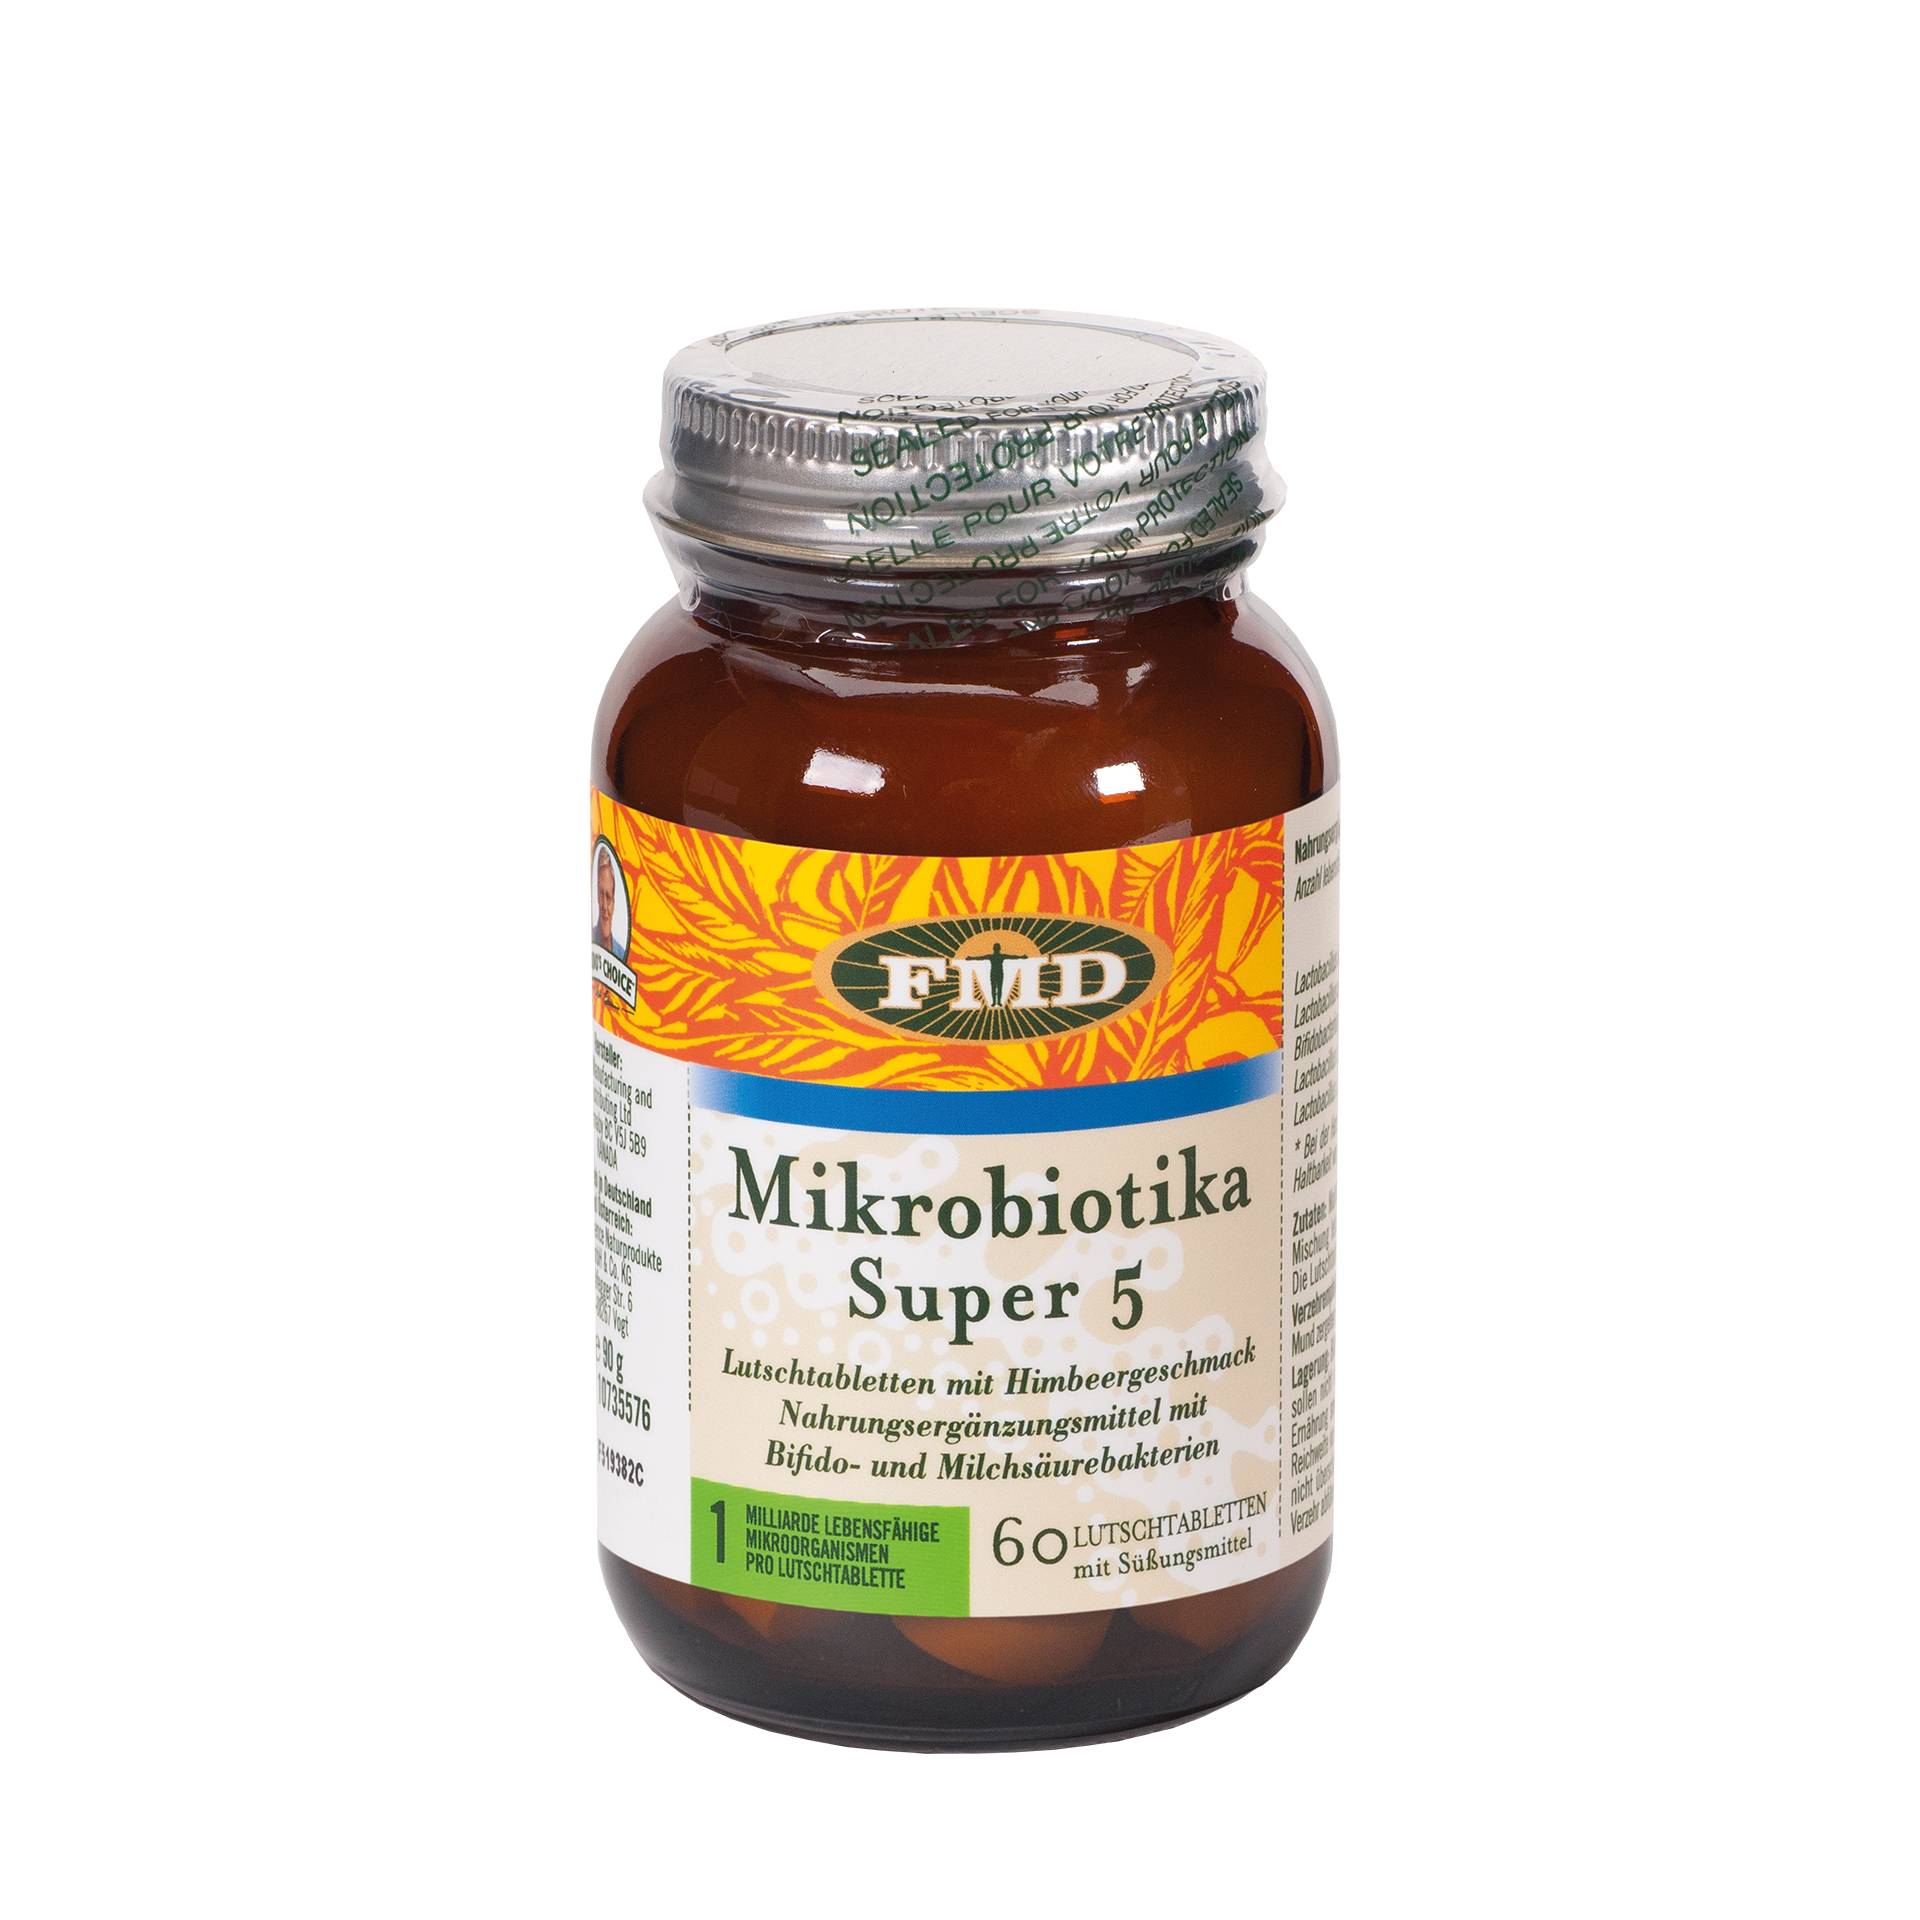 Mikrobiotika Super 5, 60 Lutschtabletten von FMD